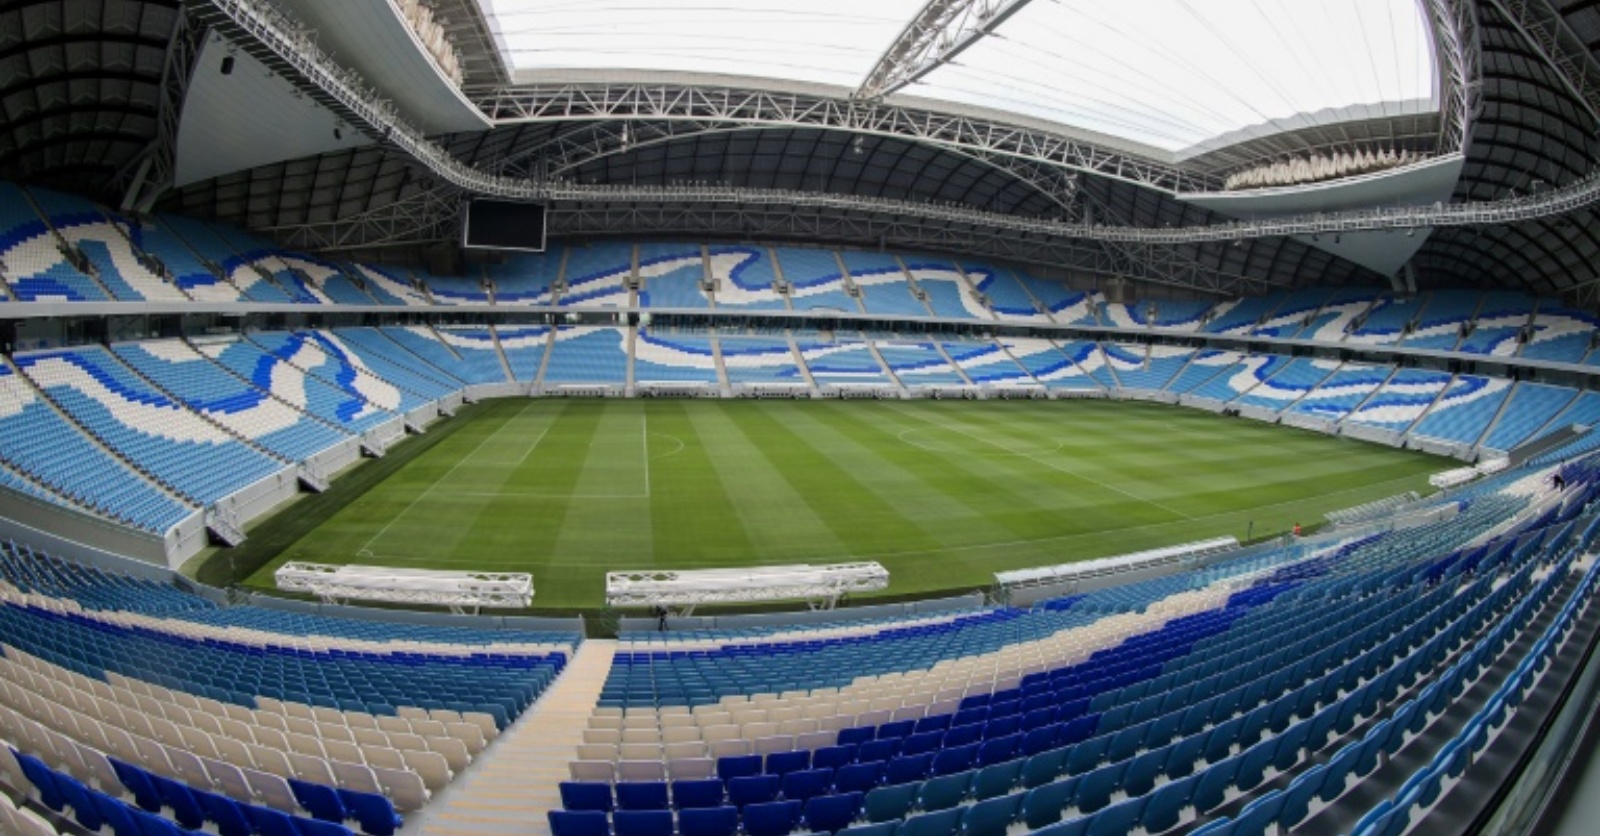 لقطة من استاد الجنوب الذي سيستضيف سبع مباريات في مونديال قطر 2022. 20 أبريل 2022